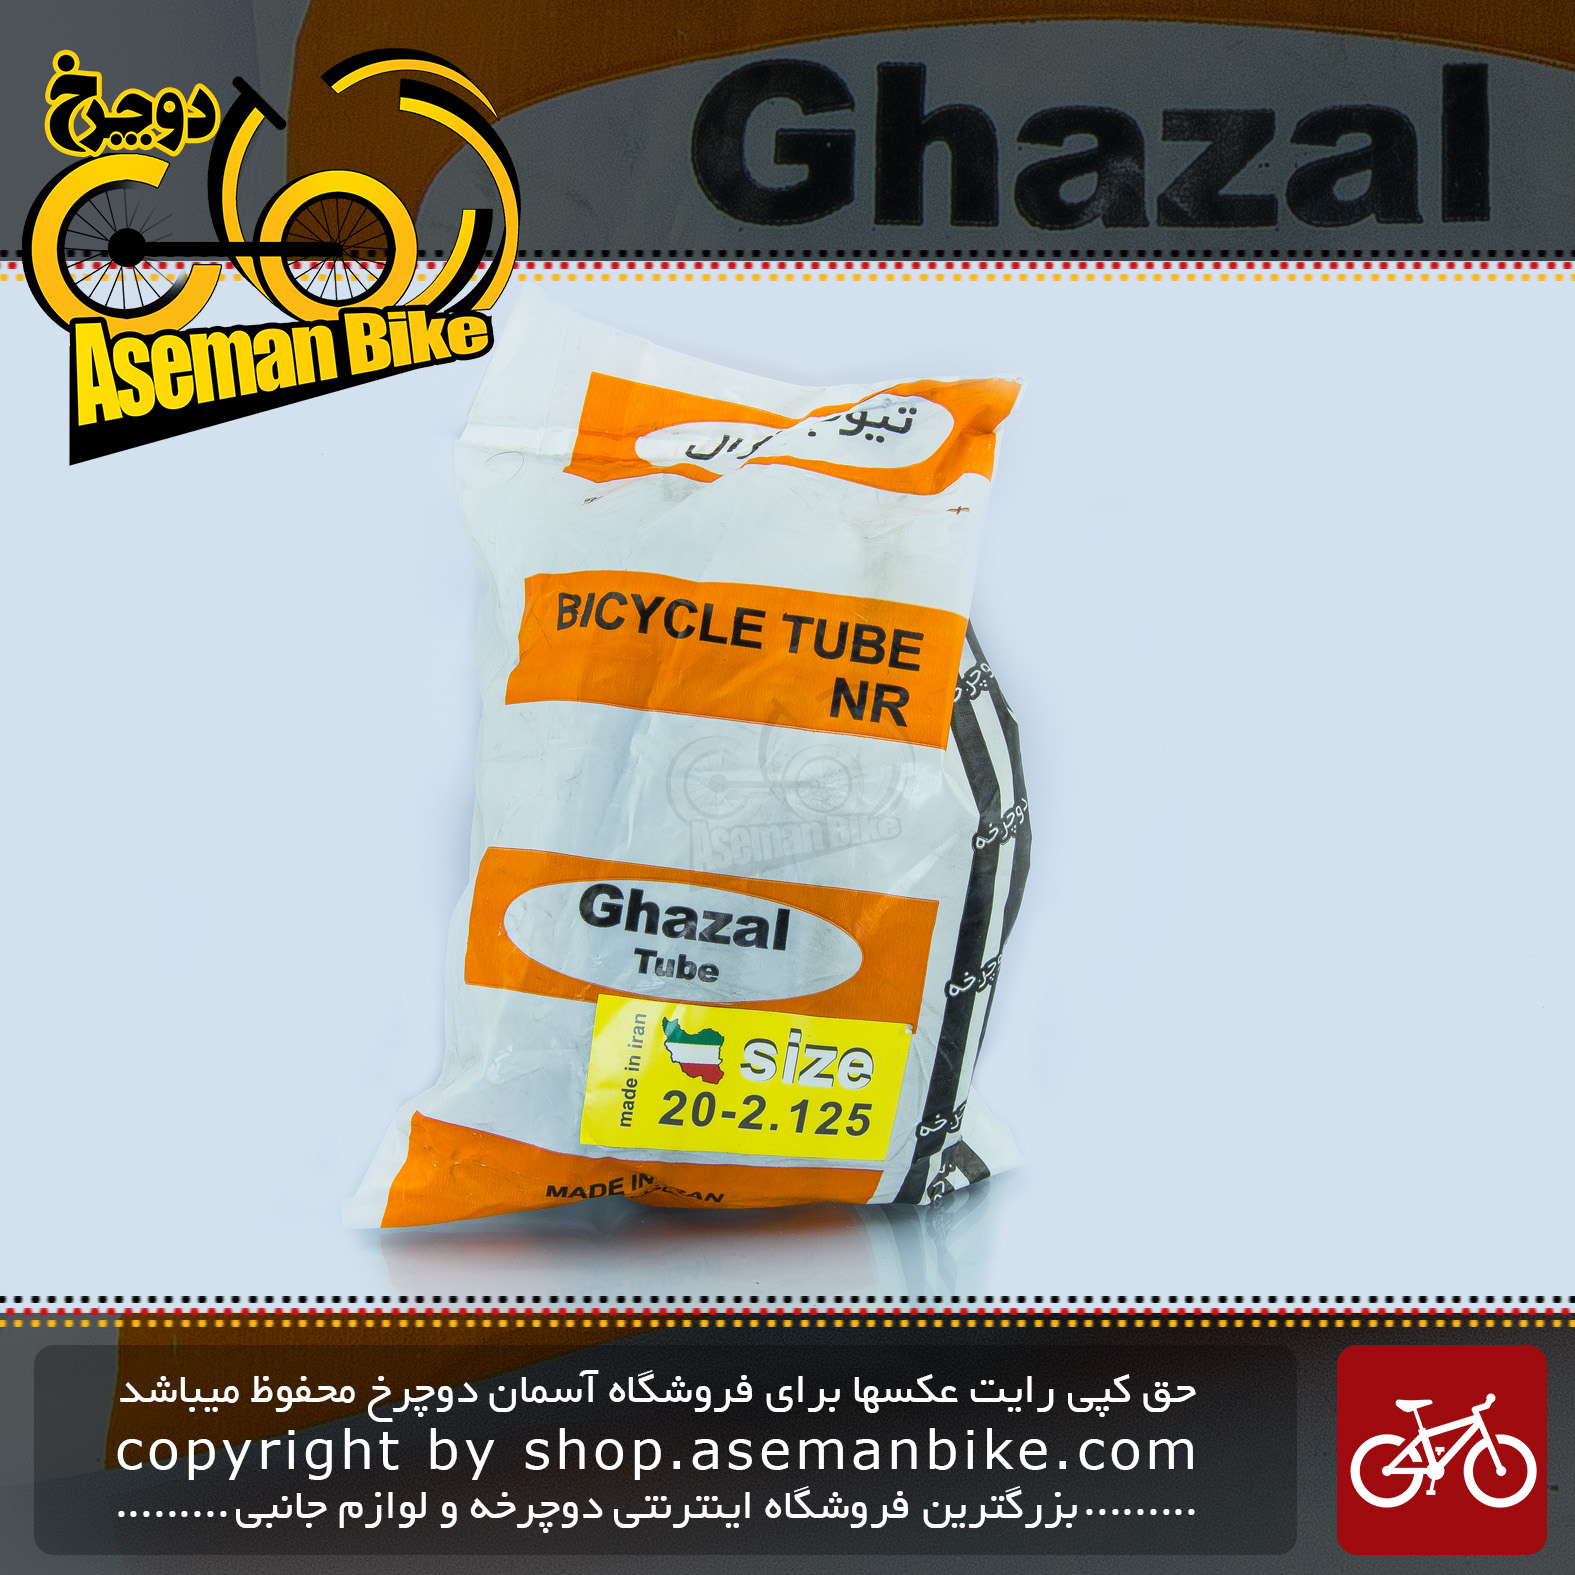 تیوپ دوچرخه غزال تیوپ سایز 20 در 2.125 الی 2.30 ساخت ایران Bicycle Tube Ghazal TUBE Size 20x2.125-2.30